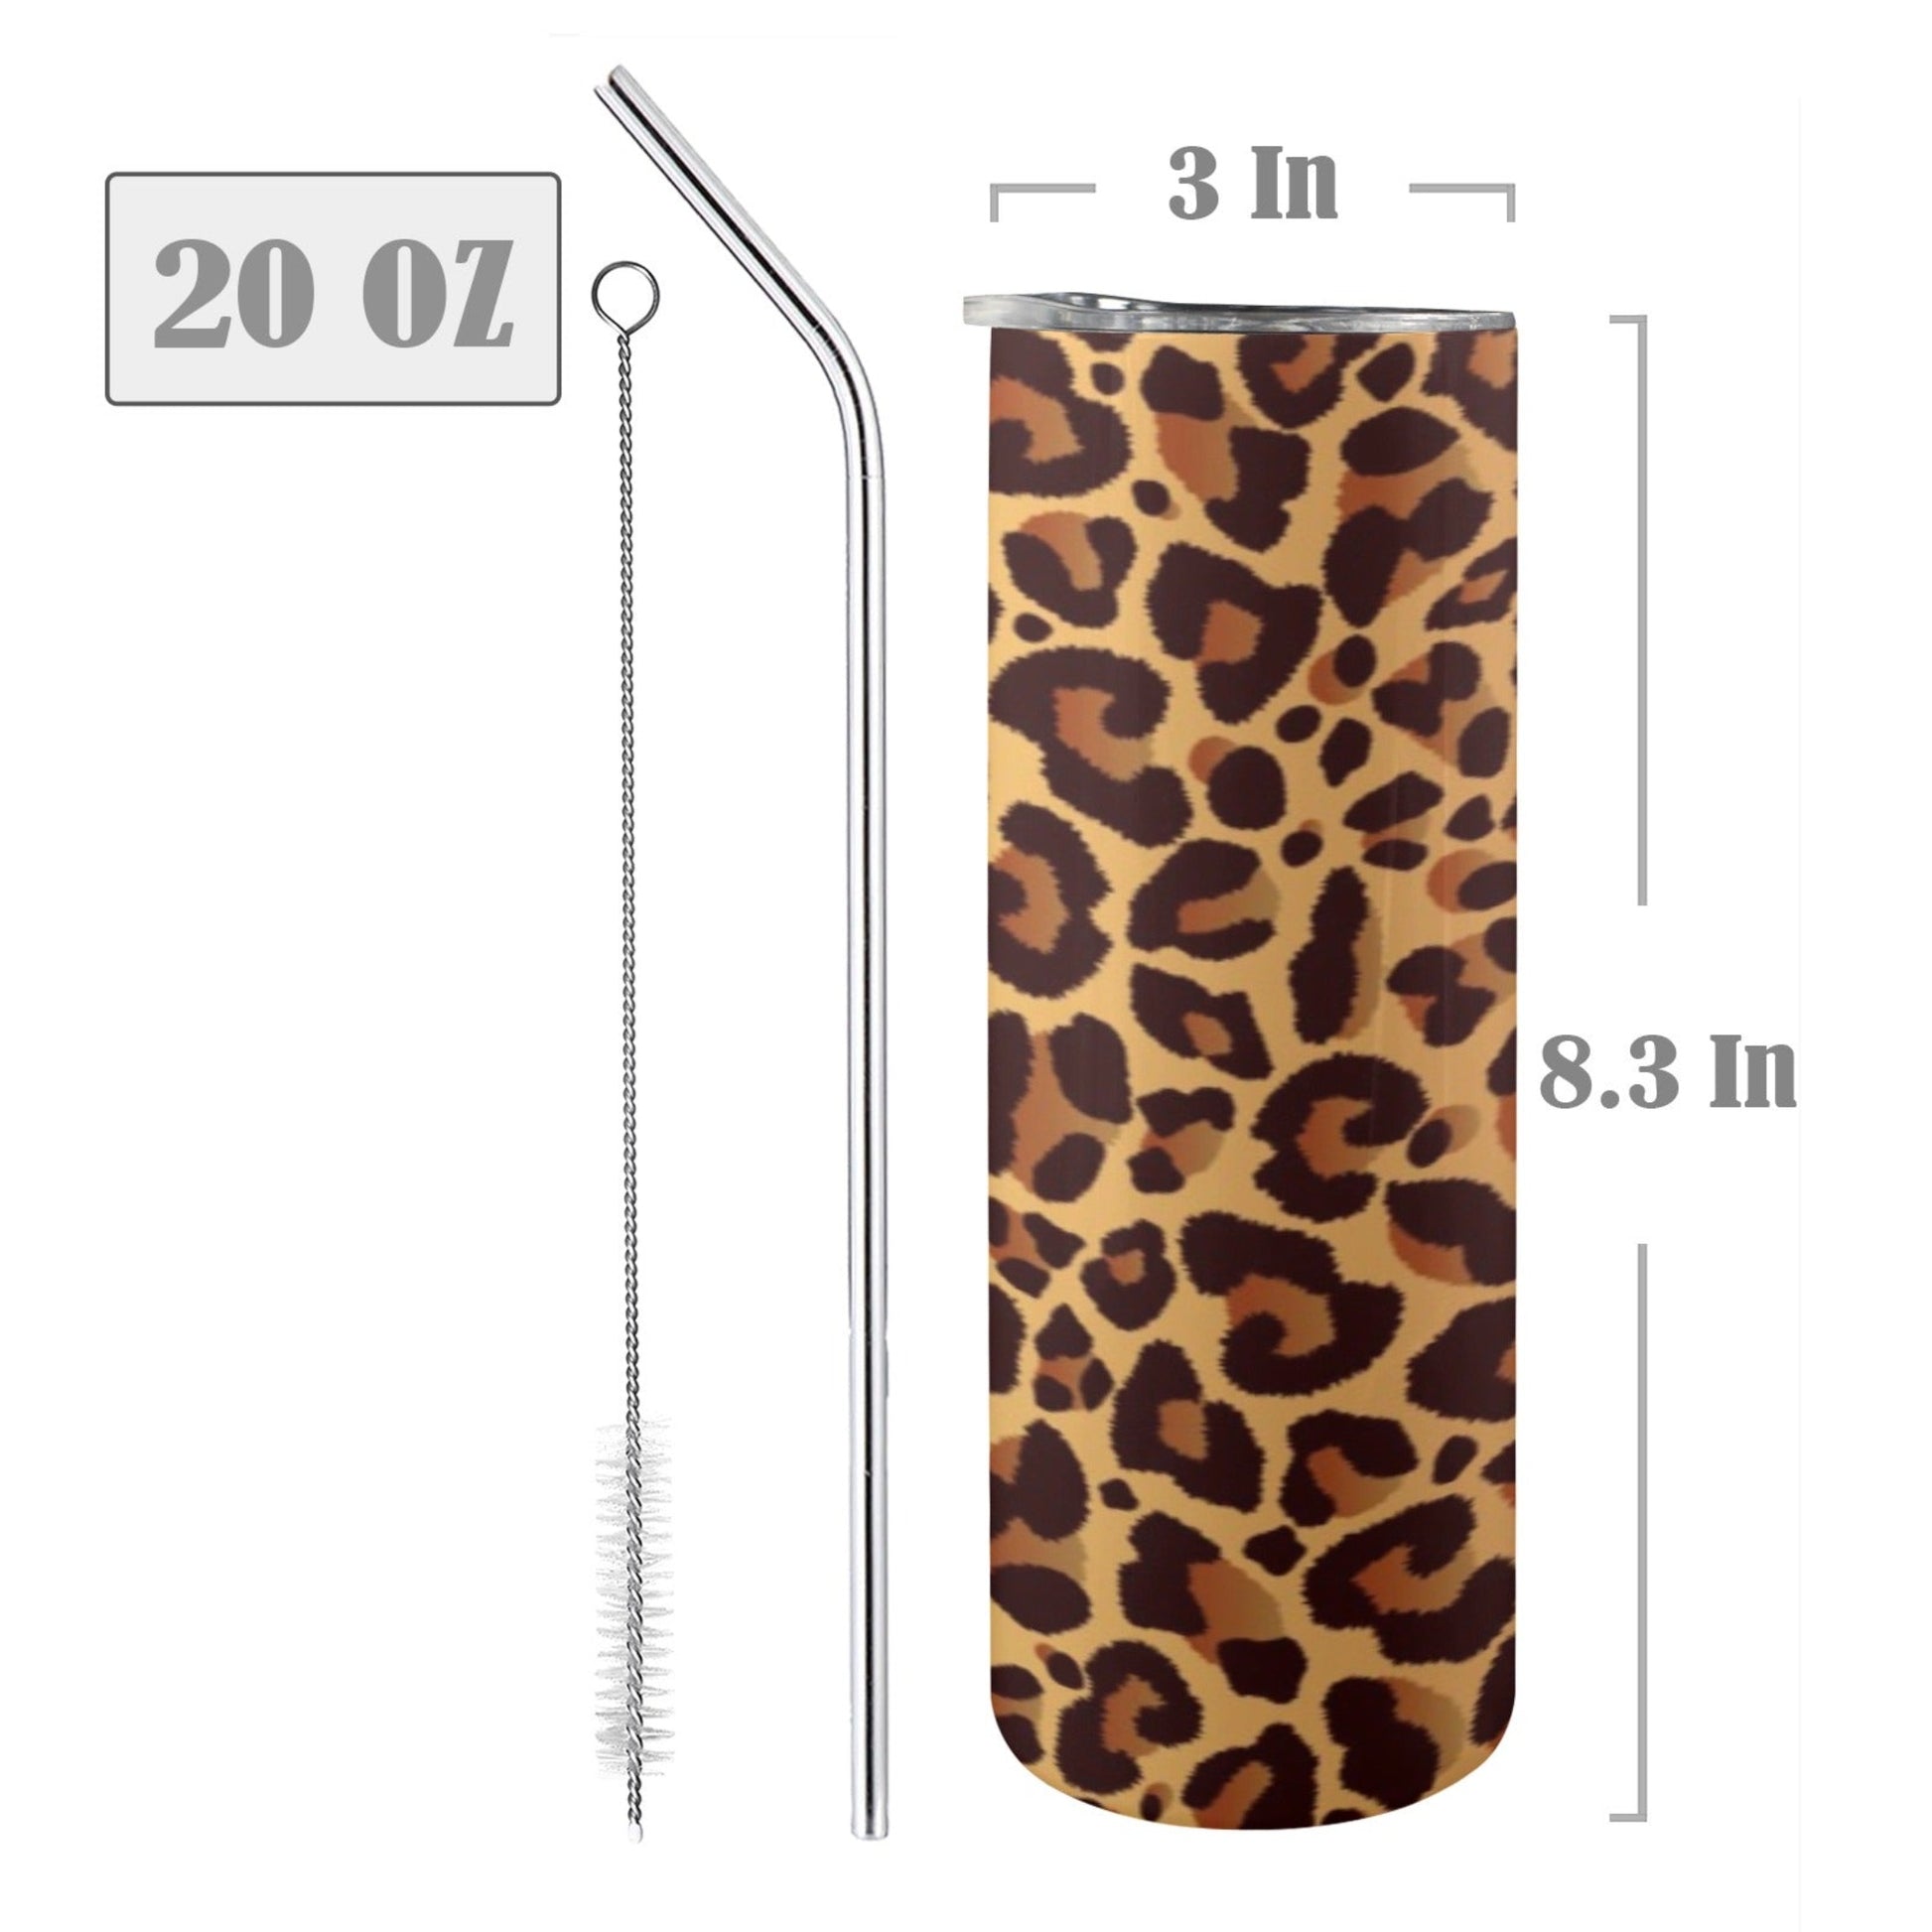 Leopard Print - 20oz Tall Skinny Tumbler with Lid and Straw 20oz Tall Skinny Tumbler with Lid and Straw